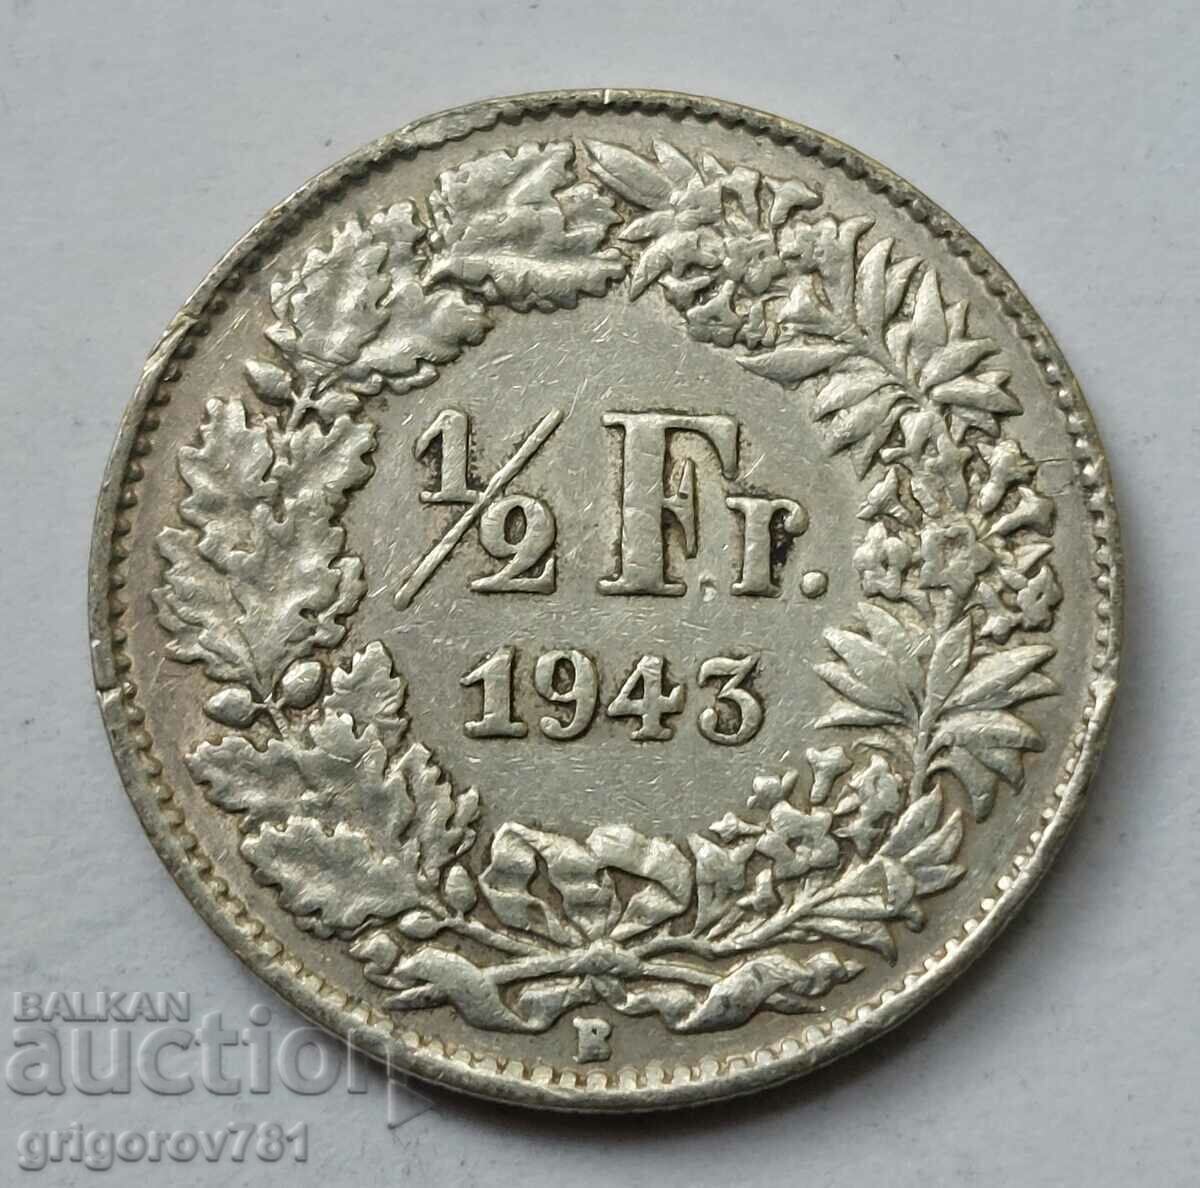 Ασημένιο φράγκο 1/2 Ελβετία 1943 Β - Ασημένιο νόμισμα #70